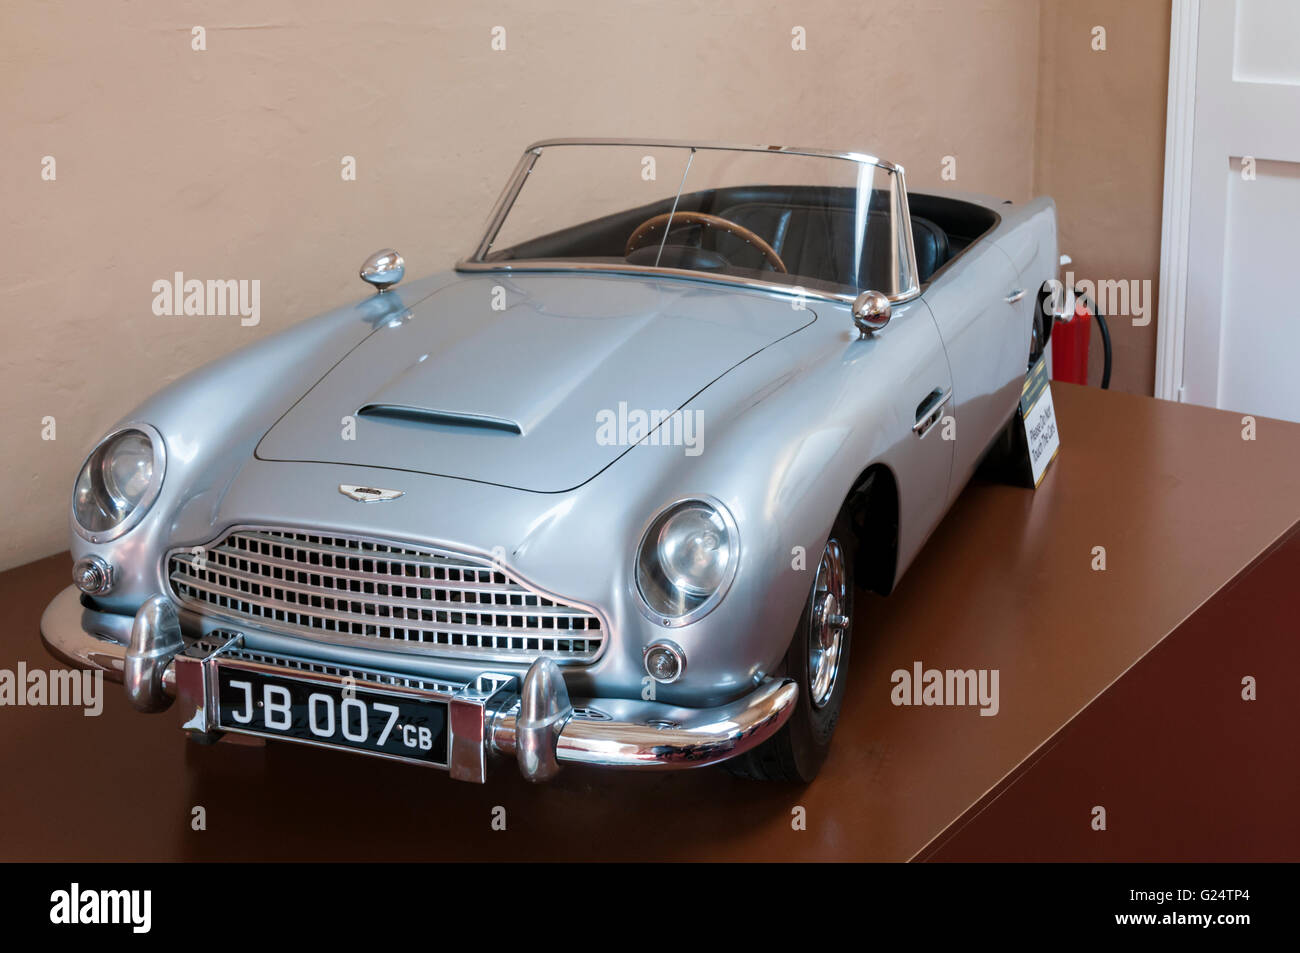 Réplique du modèle Aston Martin de James Bond a fait pour le prince Andrew en 1966. Tous les détails dans la description. Banque D'Images